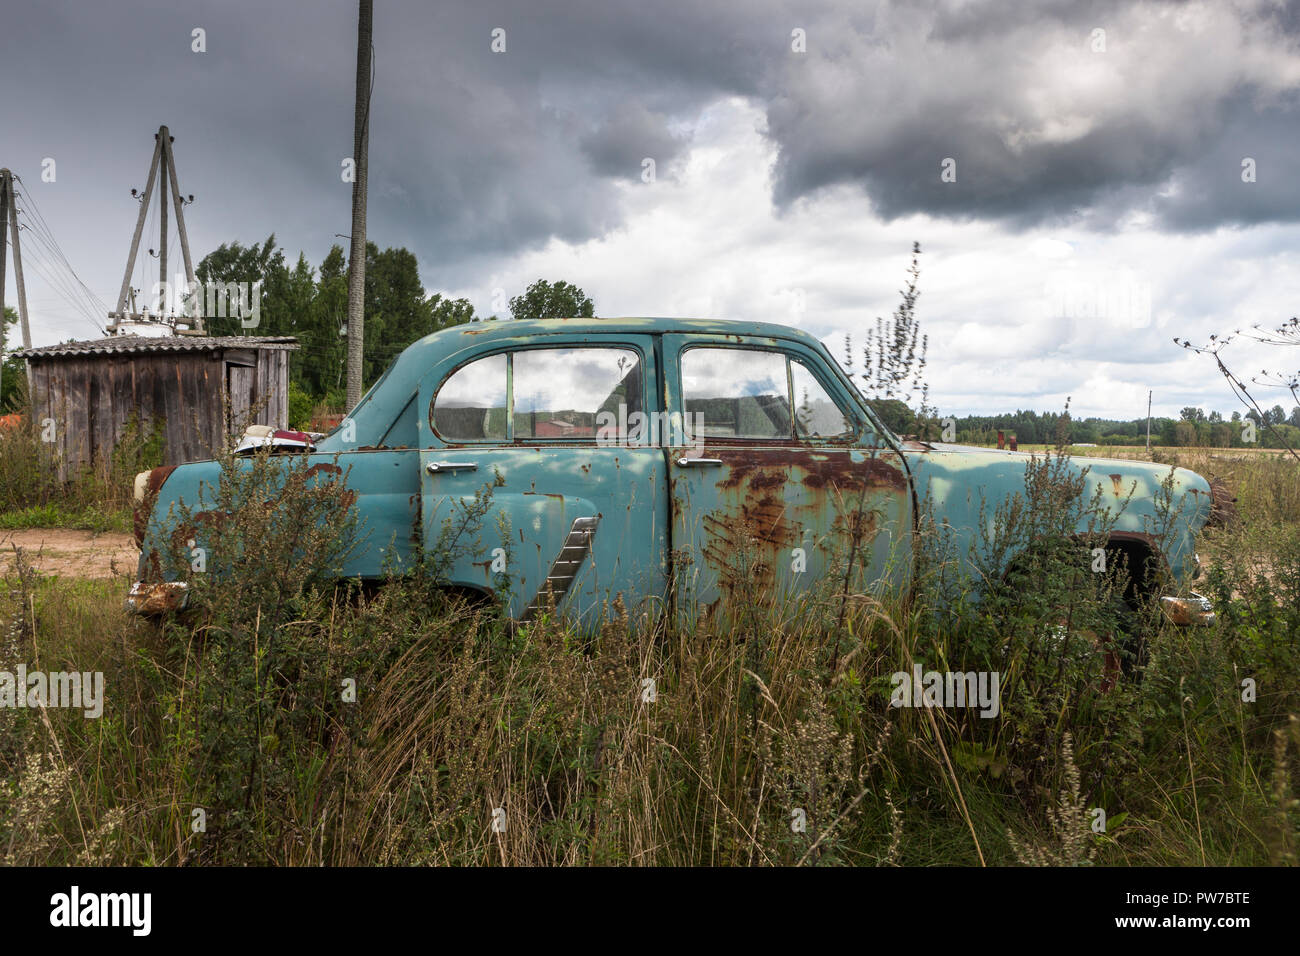 Kuldiga, Lettland. 16 August, 2013. Eine klassische sowjetische ära Moskvich 402 Automobile in einem Hof außerhalb Kuldiga, Lettland. Stockfoto